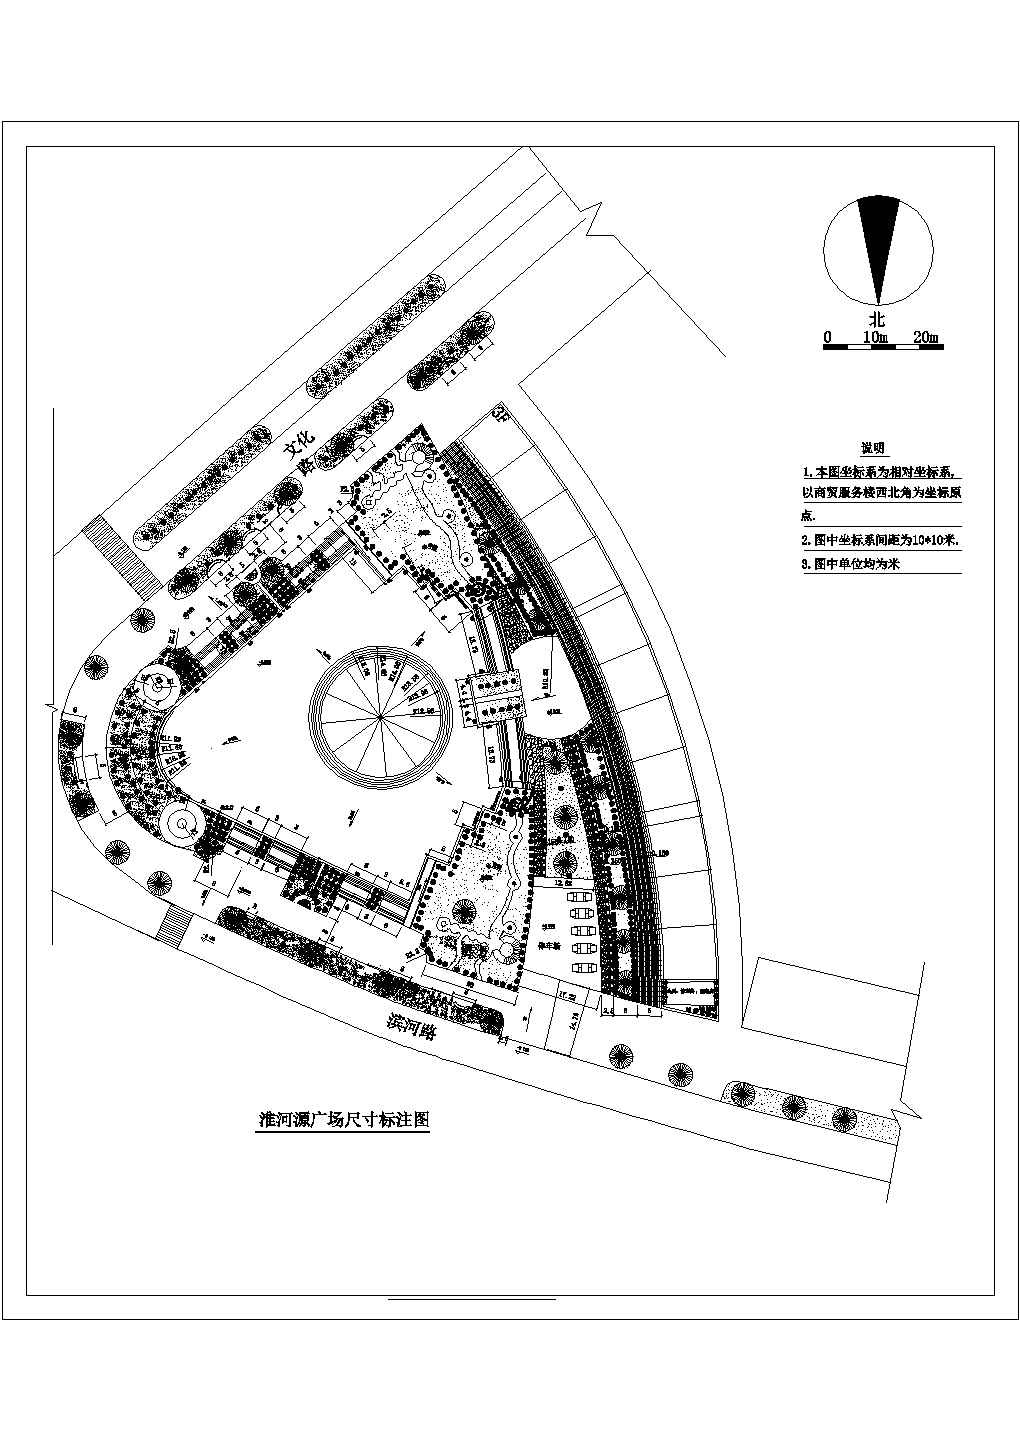 淮河源广场园林景观规划设计施工图